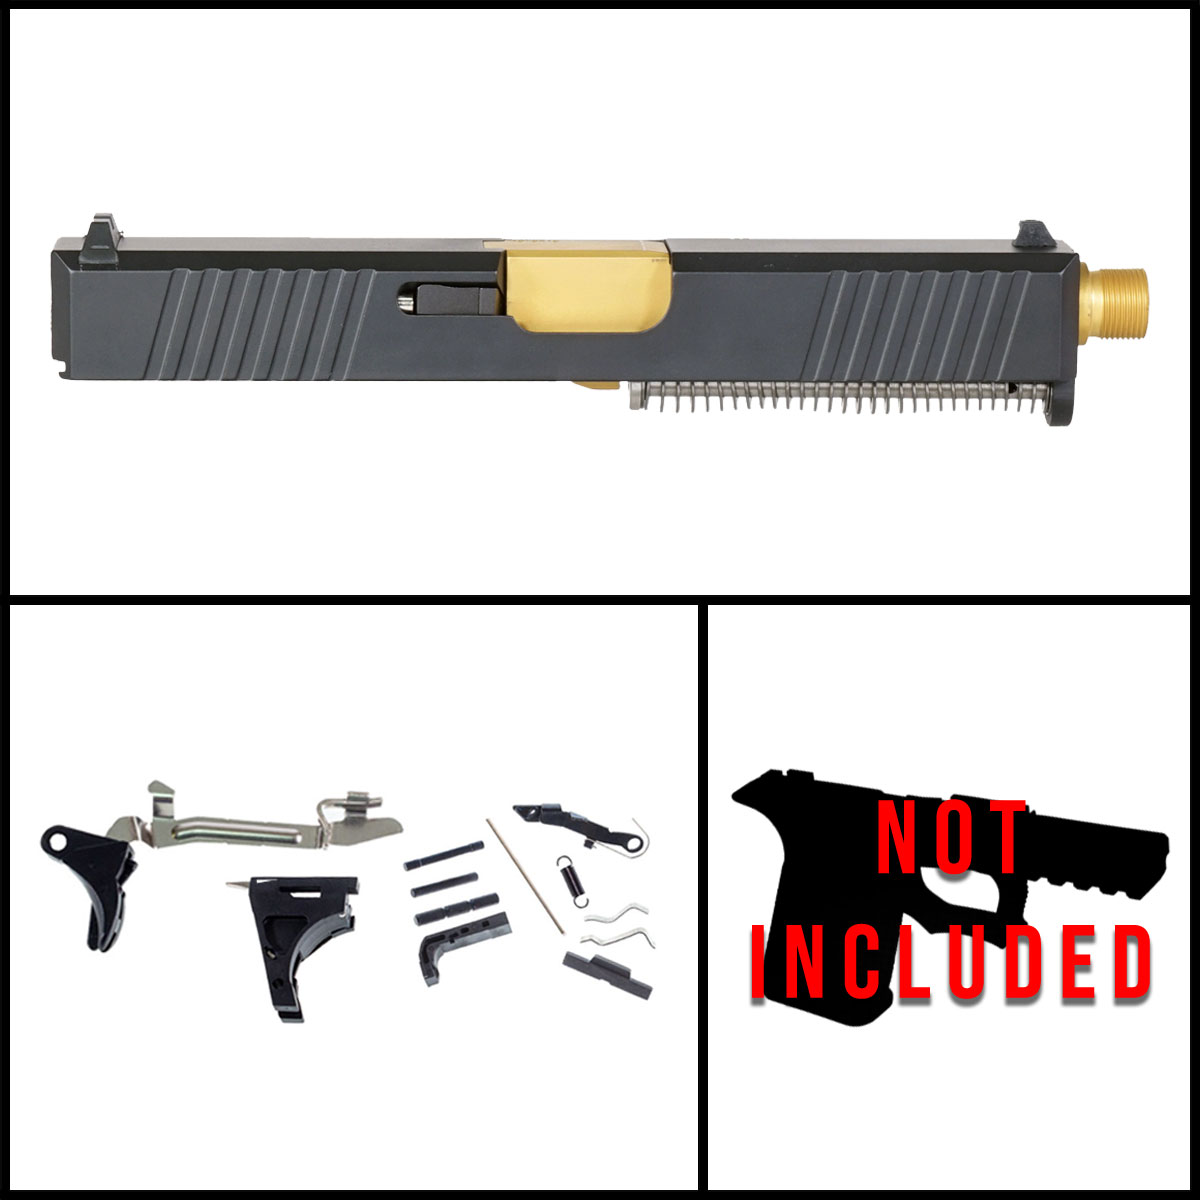 DTT 'Oakley' 9mm Full Pistol Build Kit (Everything Minus Frame) - Glock 19 Gen 1-3 Compatible